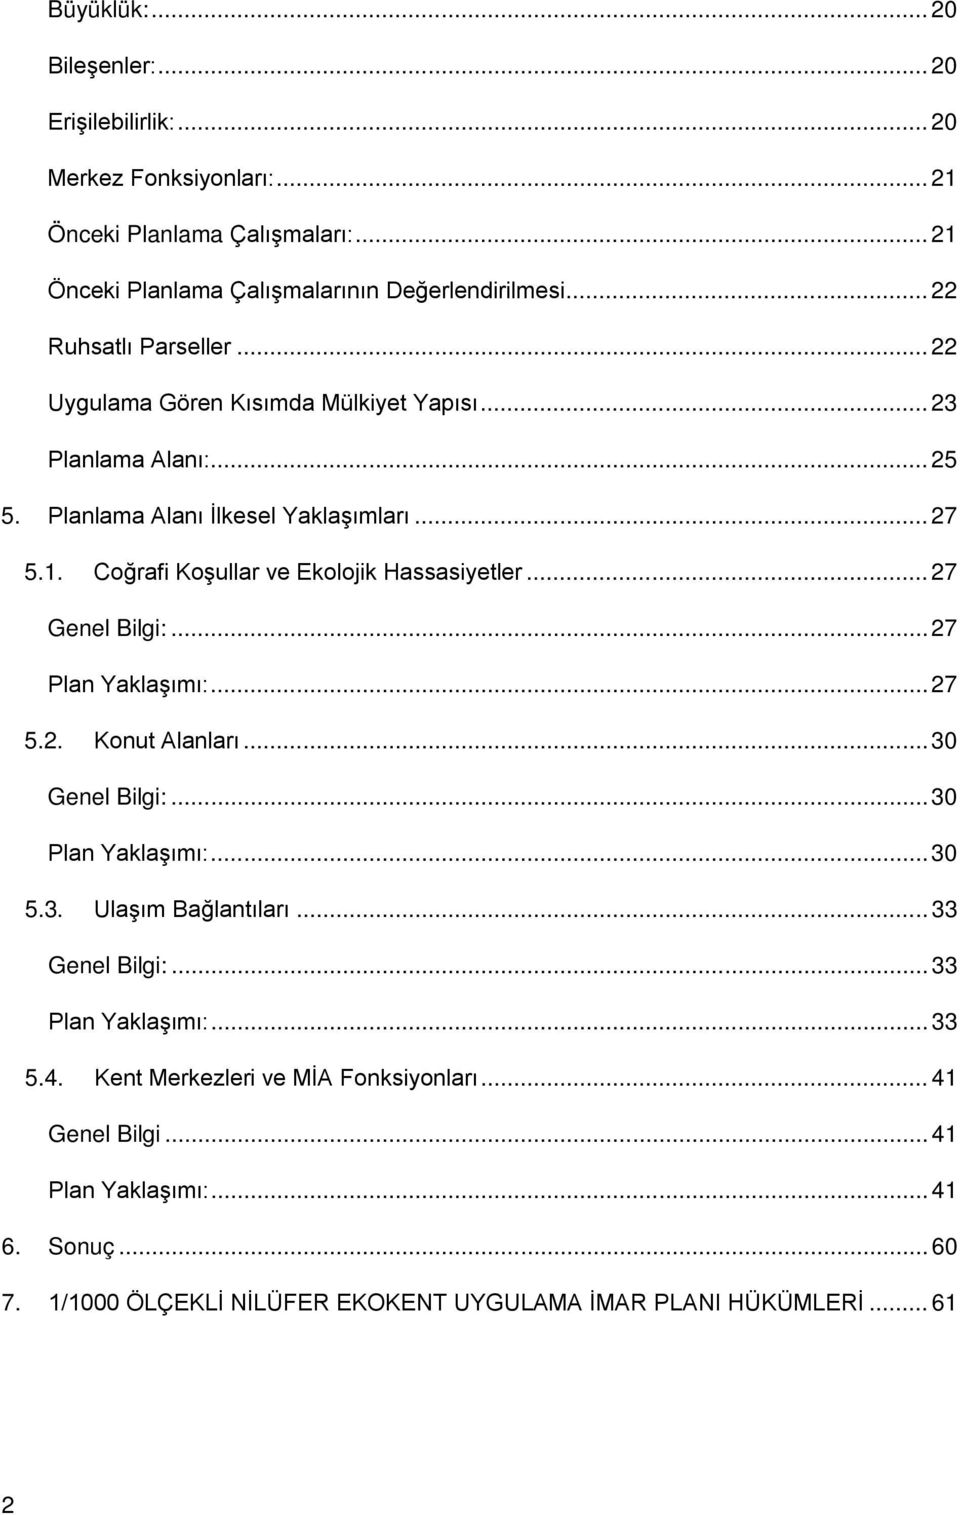 Coğrafi Koşullar ve Ekolojik Hassasiyetler... 27 Genel Bilgi:... 27 Plan Yaklaşımı:... 27 5.2. Konut Alanları... 30 Genel Bilgi:... 30 Plan Yaklaşımı:... 30 5.3. Ulaşım Bağlantıları.